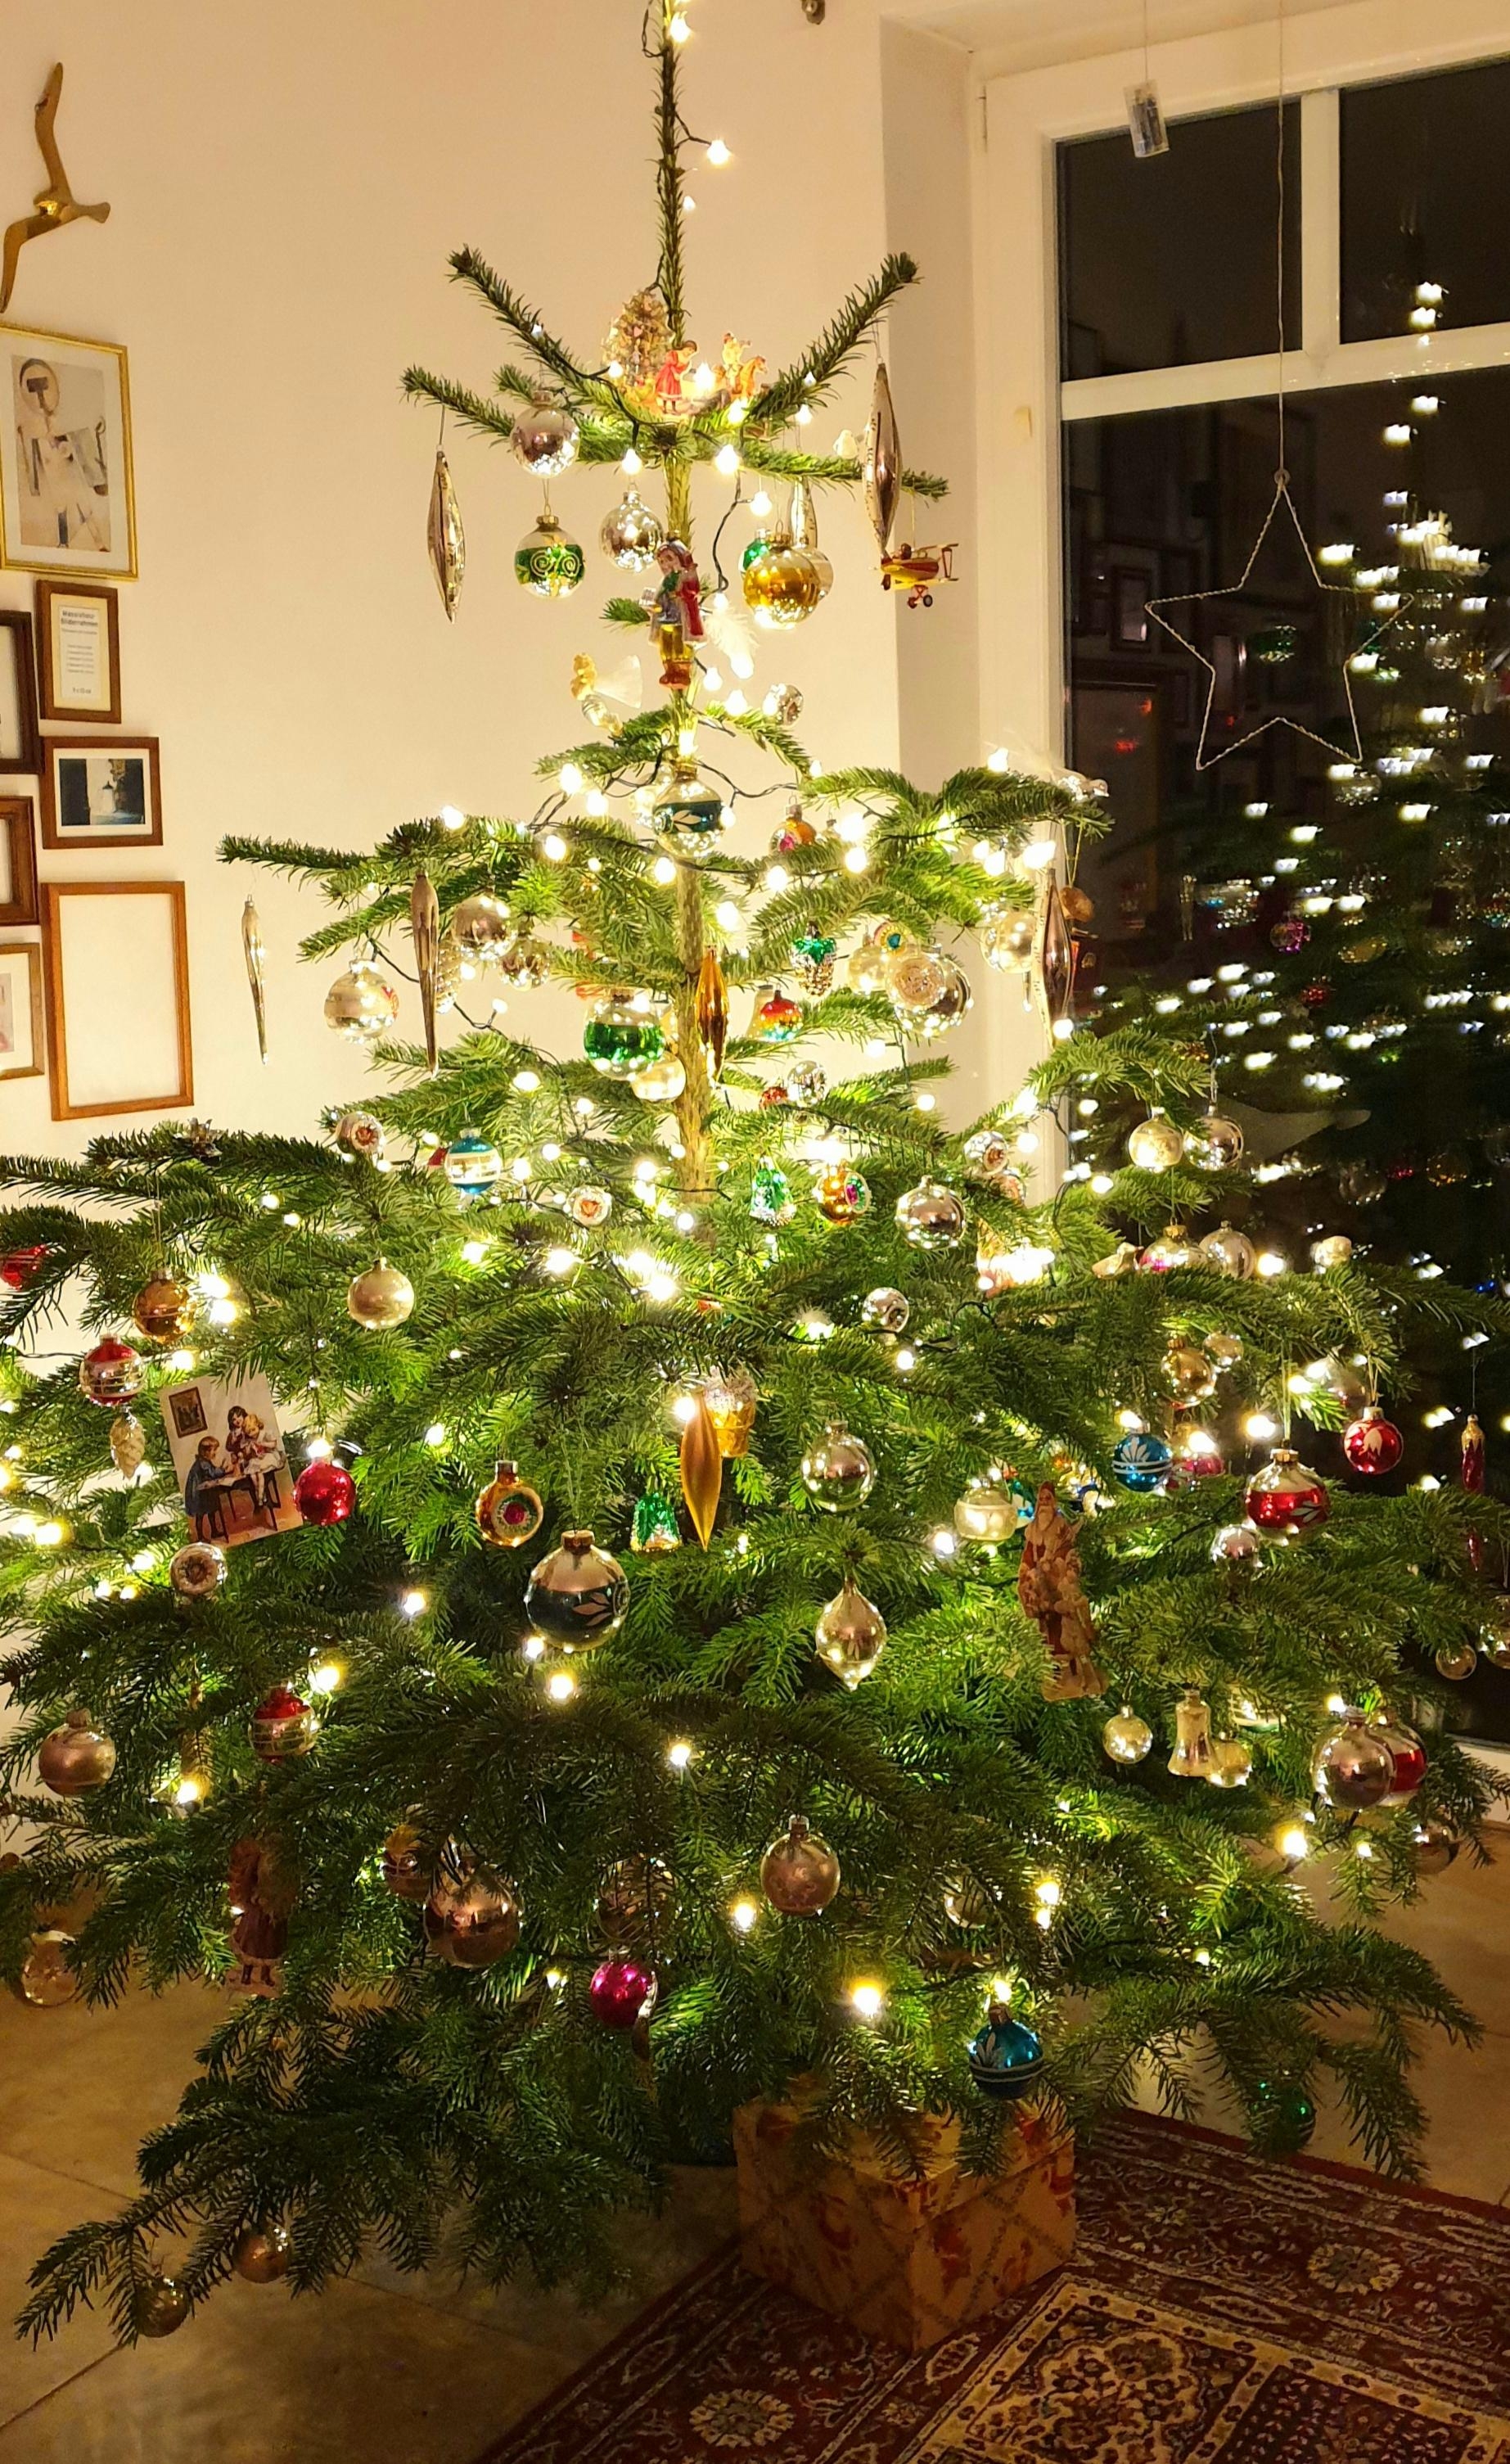 #Weihnachtsbaum #Christbaumschmuck #vintagebaum
....Weihnachten kann kommen ....